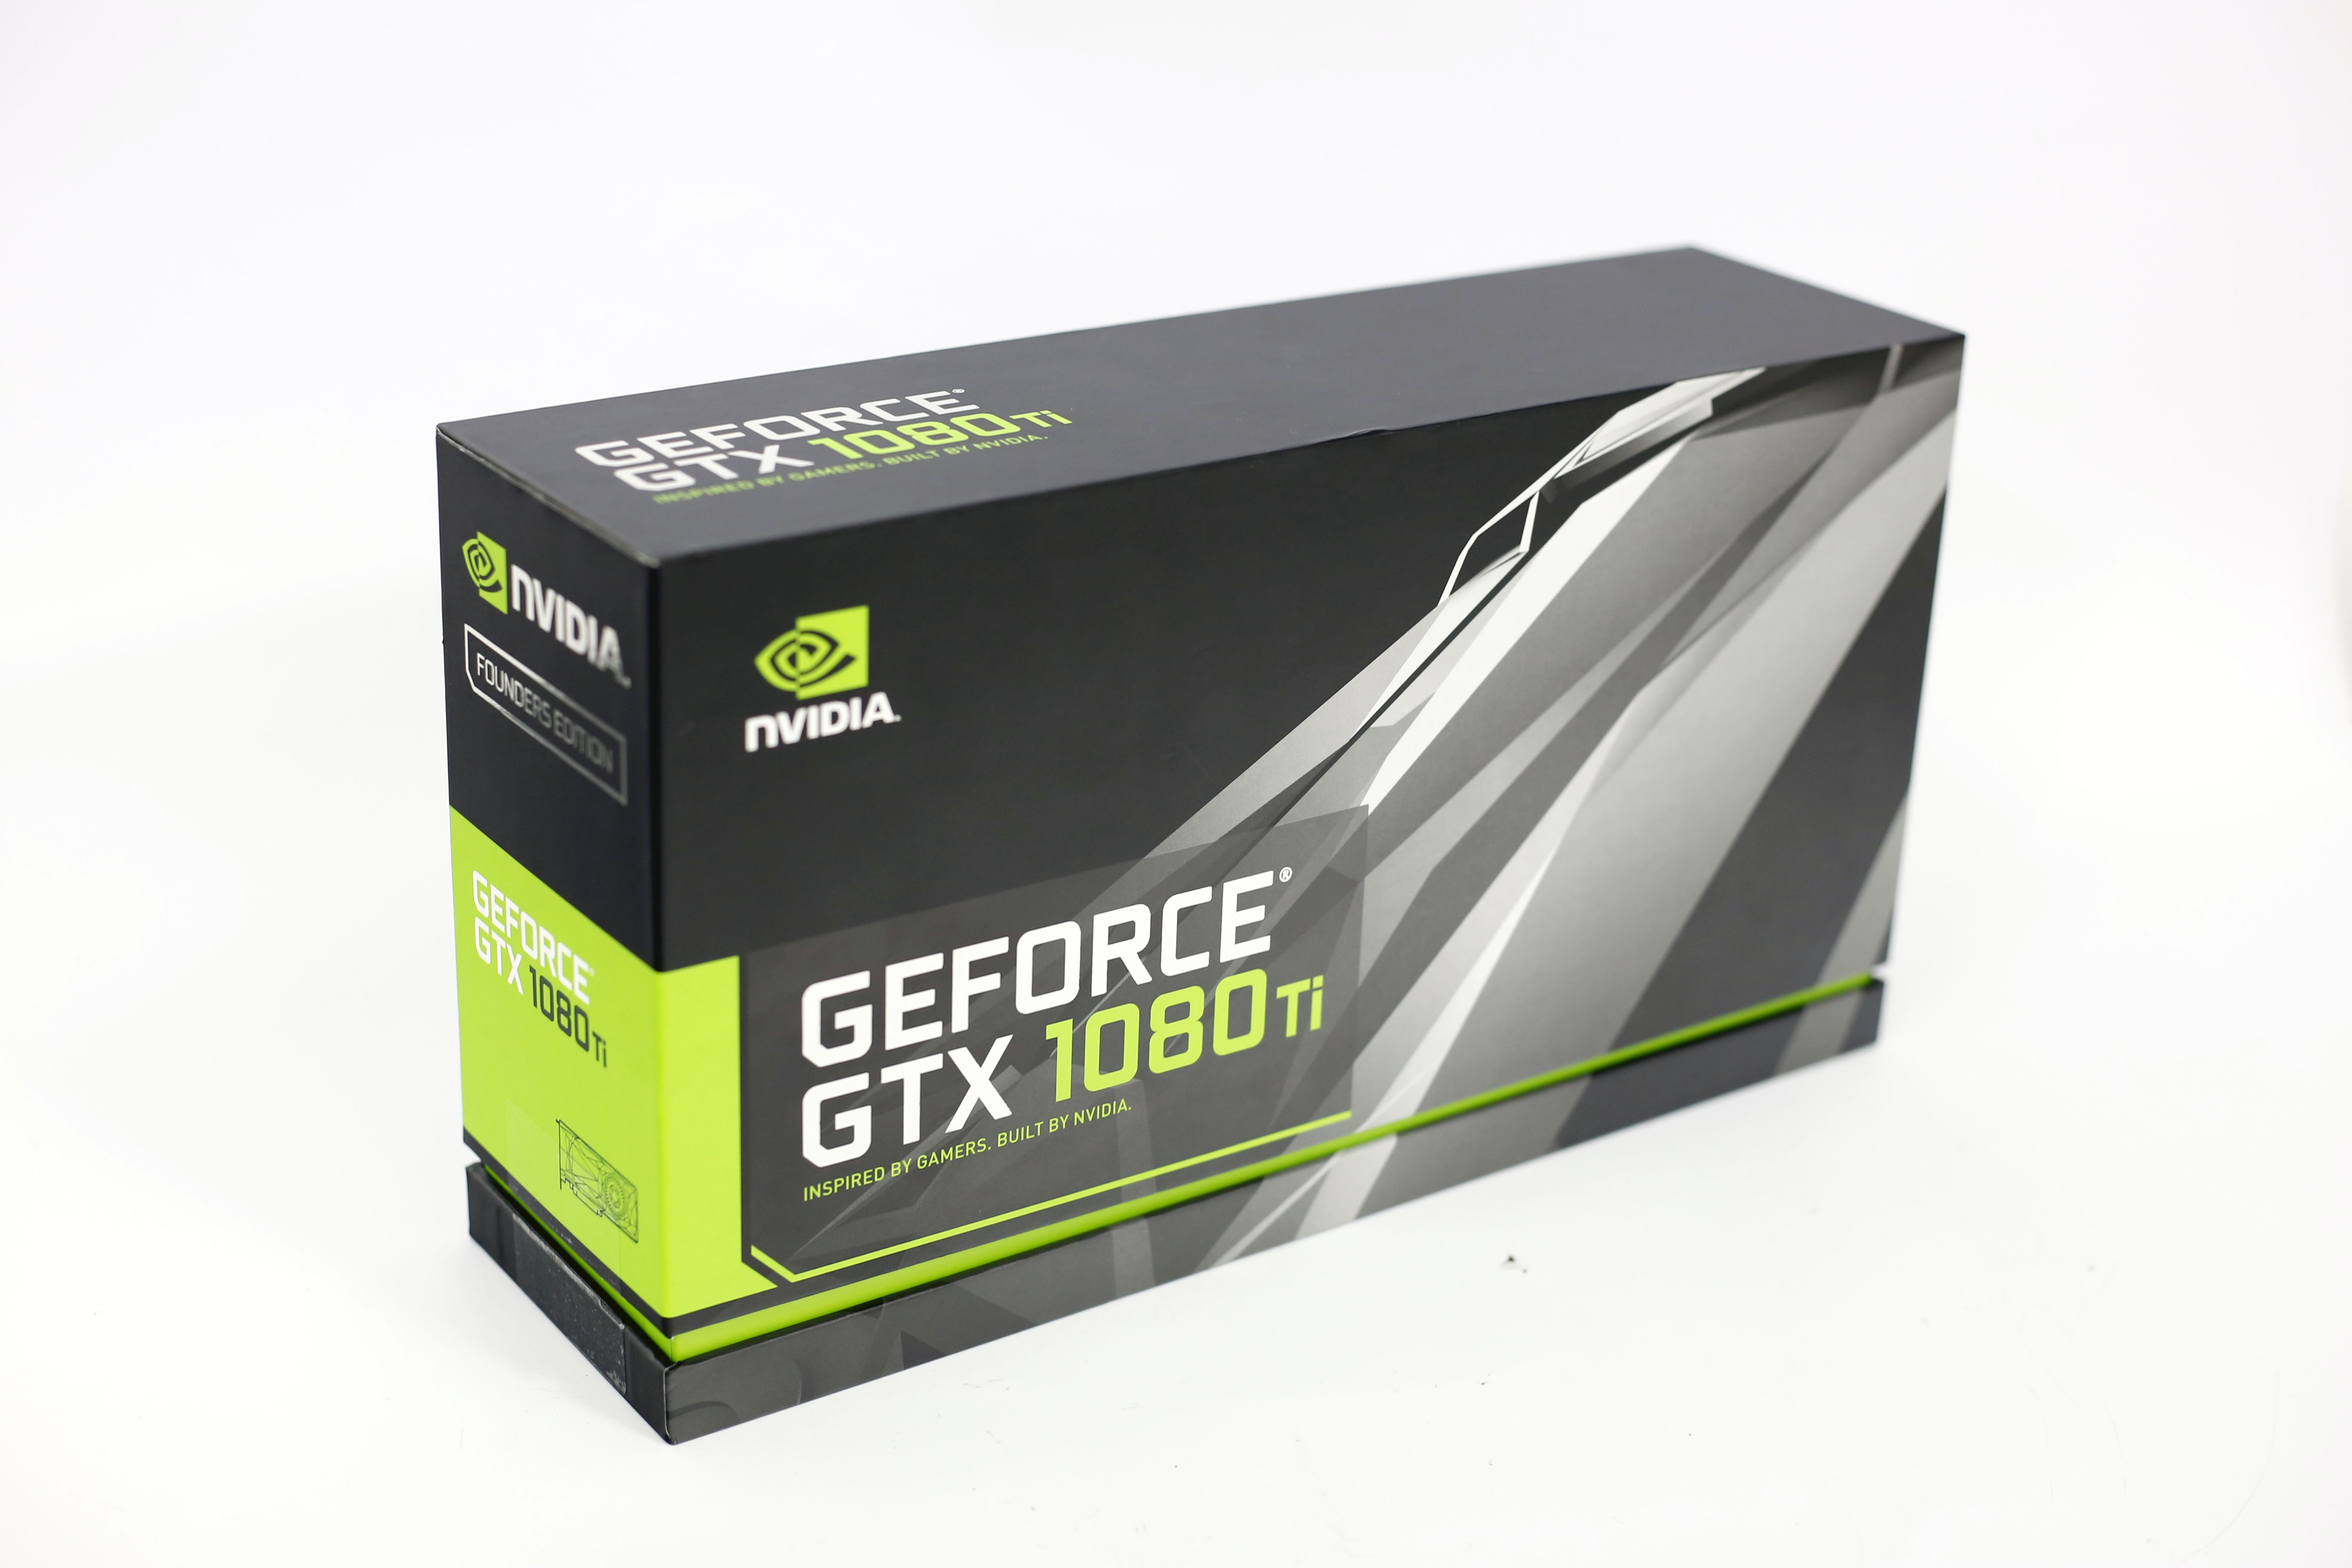 Geforce gtx 1080 founder's edition